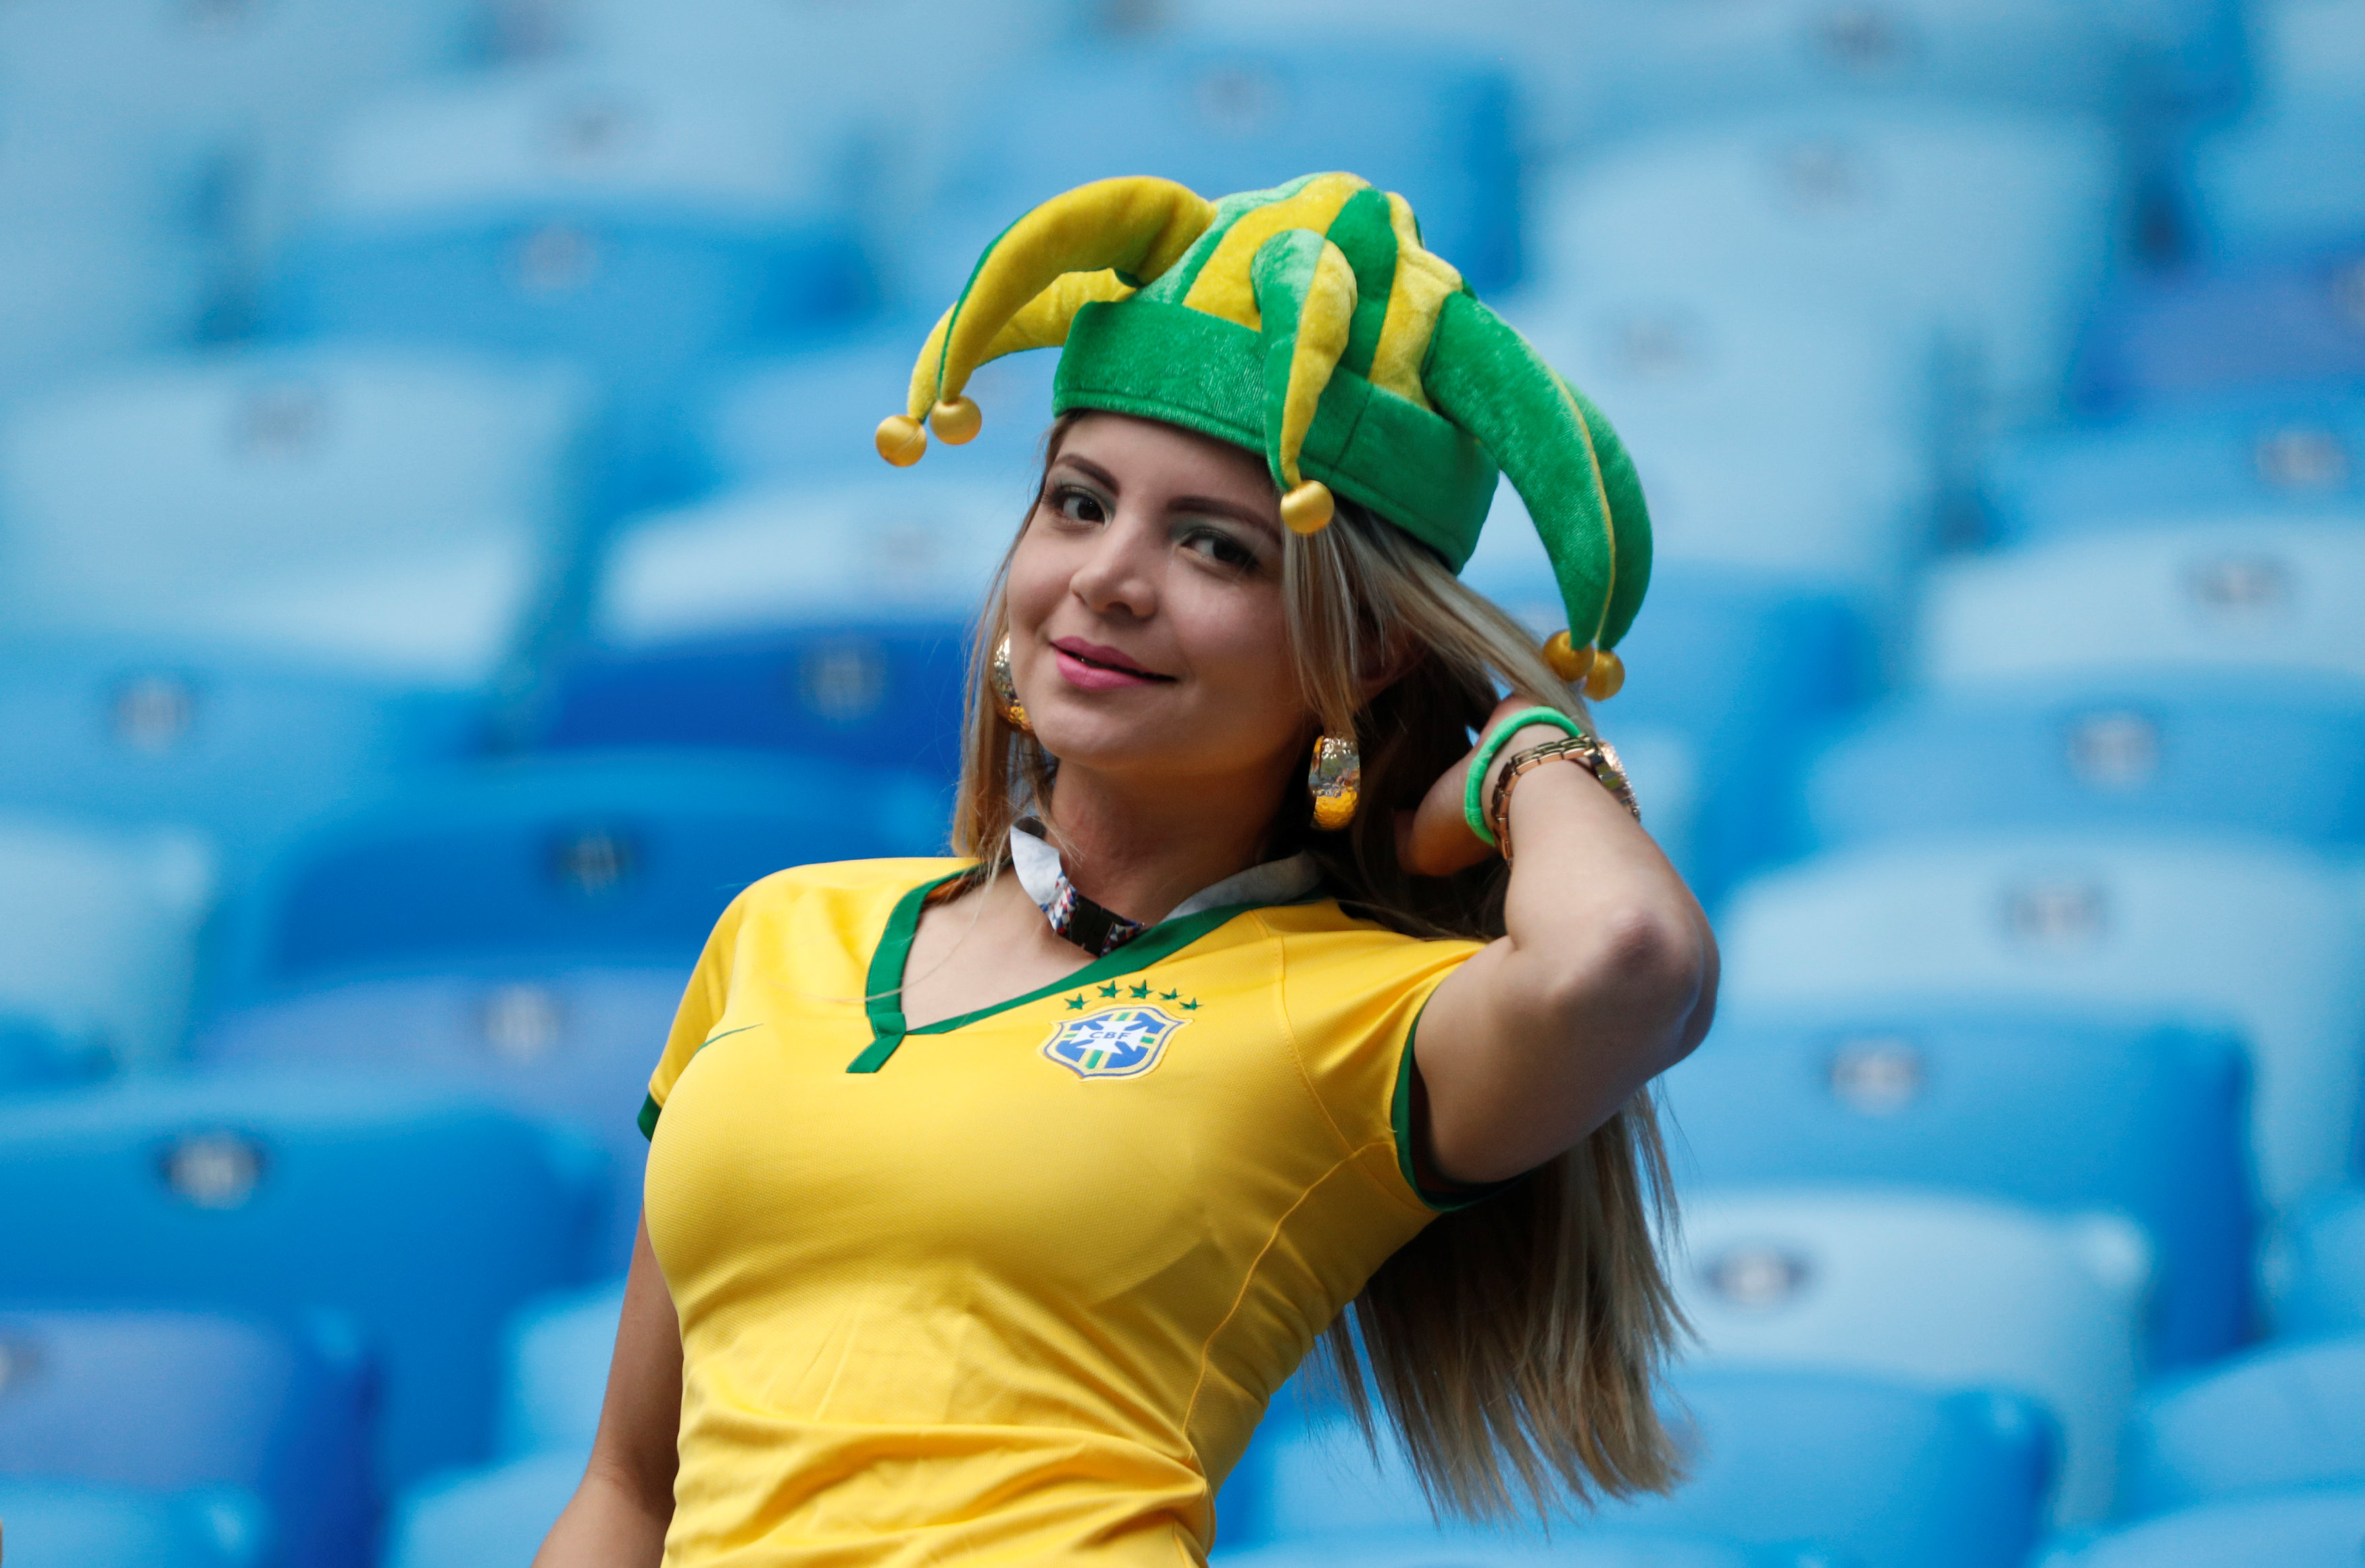 فتاة برازيلية تستعرض جمالها أمام الكاميرات